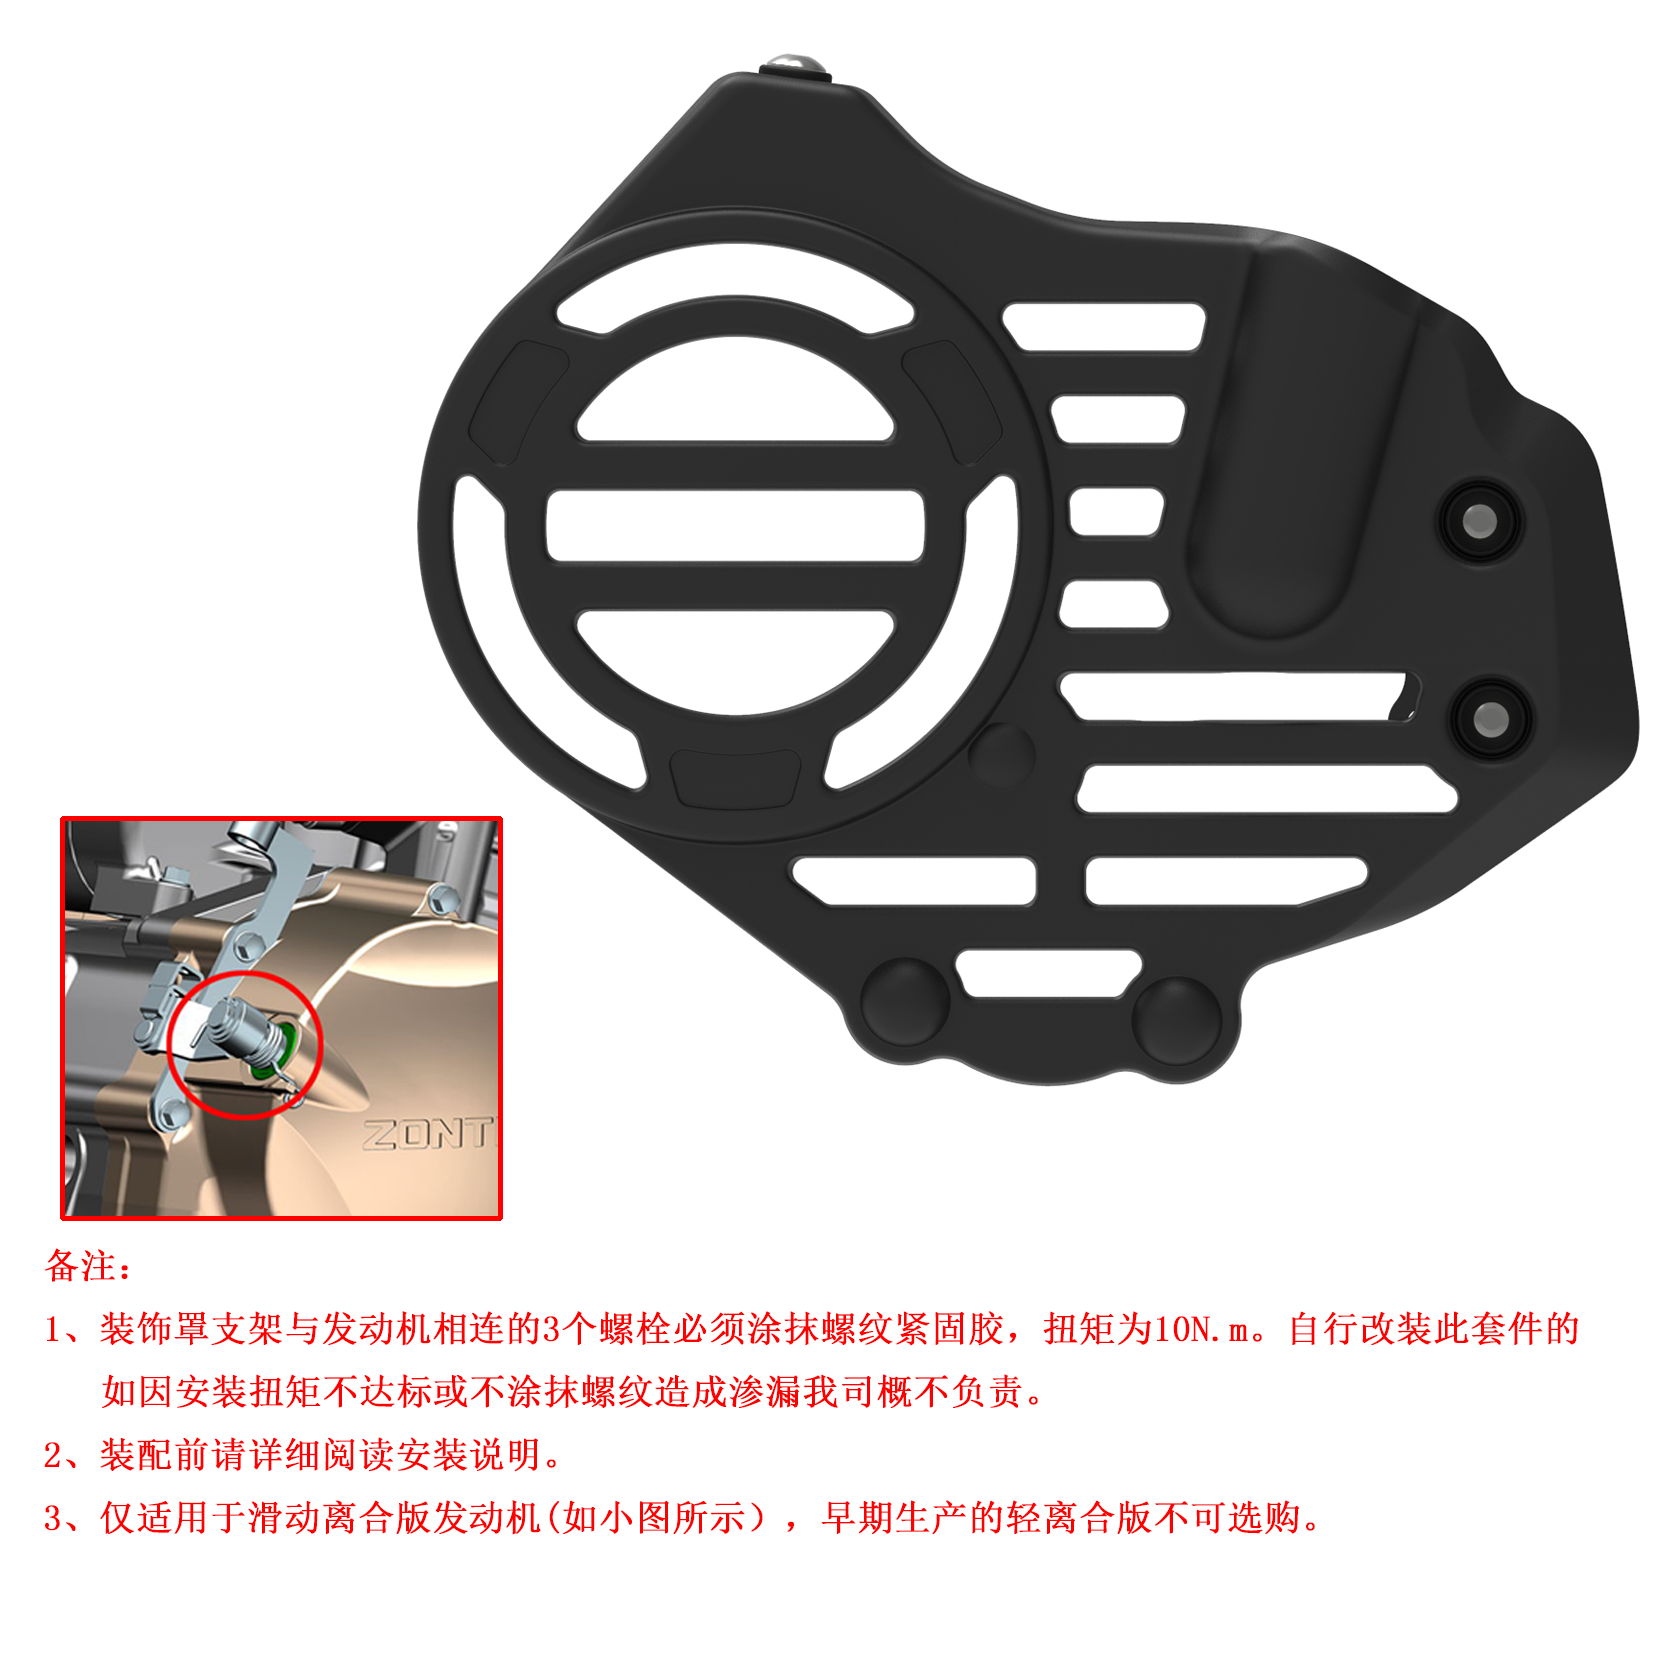 升仕ZT310-V太子摩托车发动机右护罩 保护罩塑料壳配件右盖装饰罩